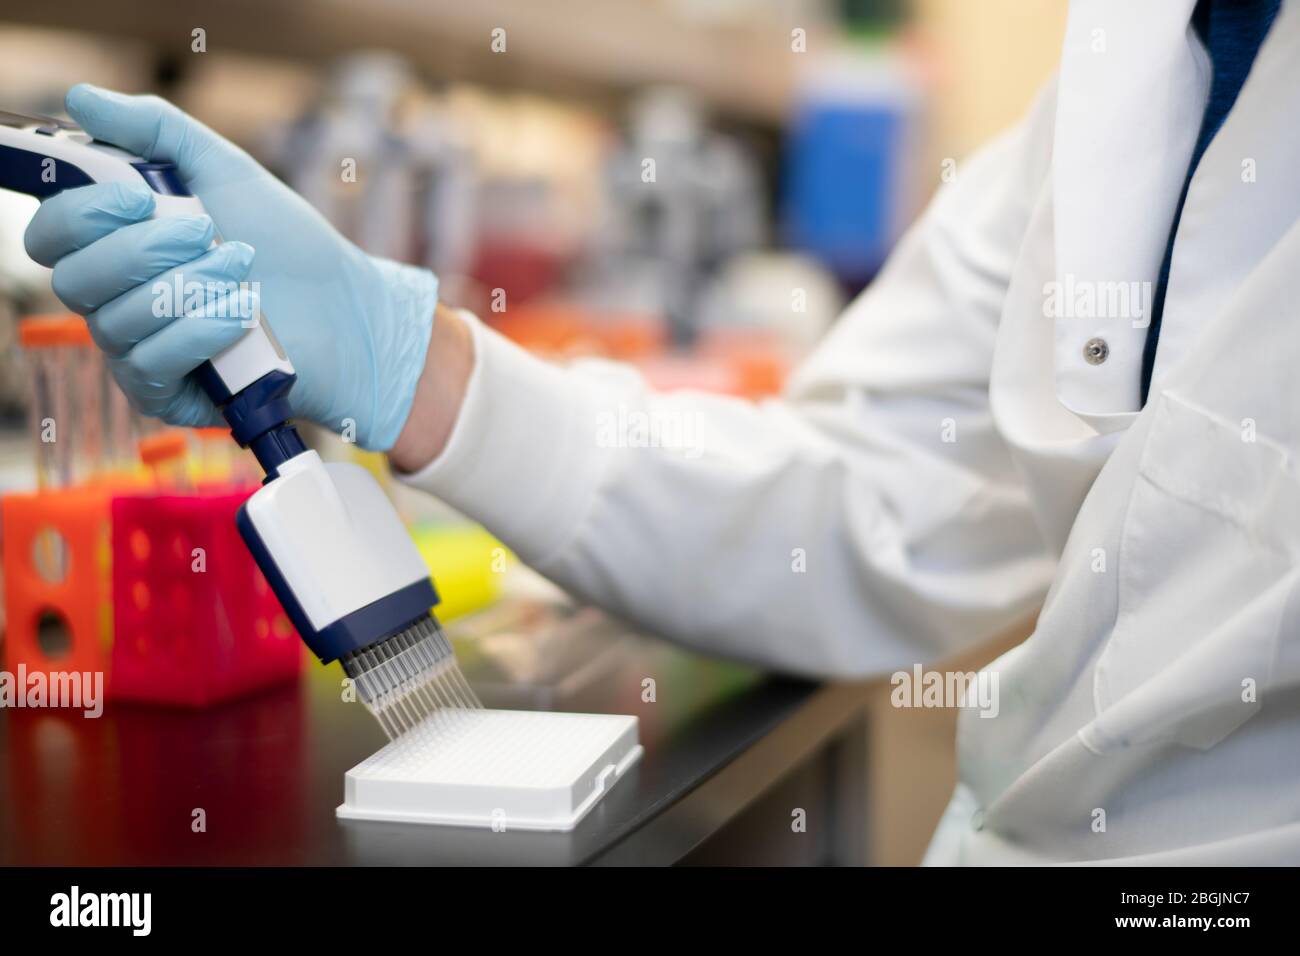 Le scientifique utilise une pipette multicanaux dans un laboratoire scientifique Banque D'Images